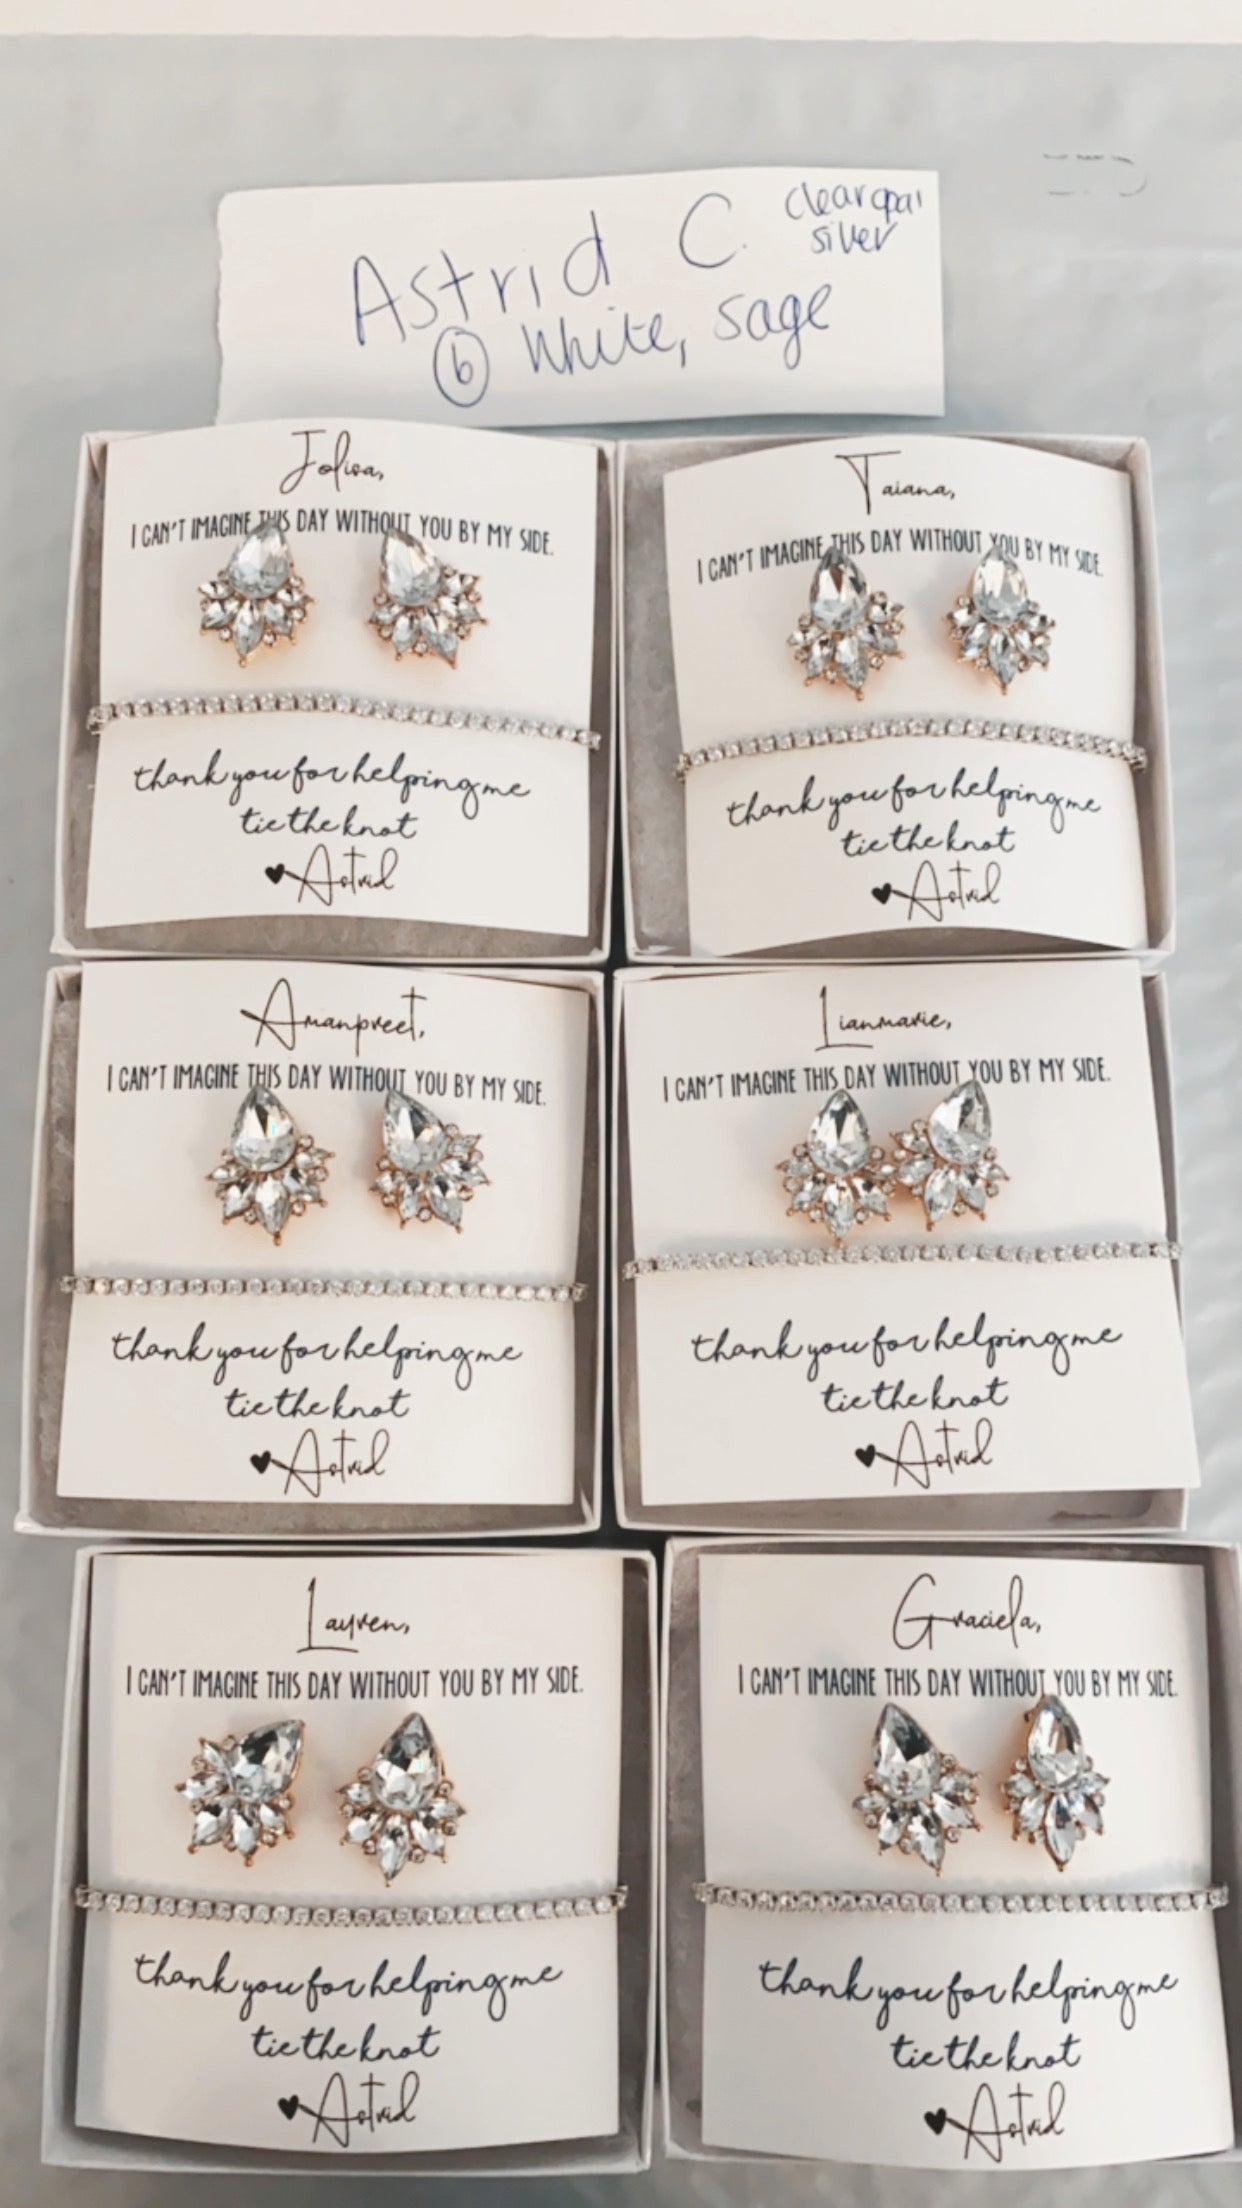 NEW! Opal Earrings & Bracelet Set